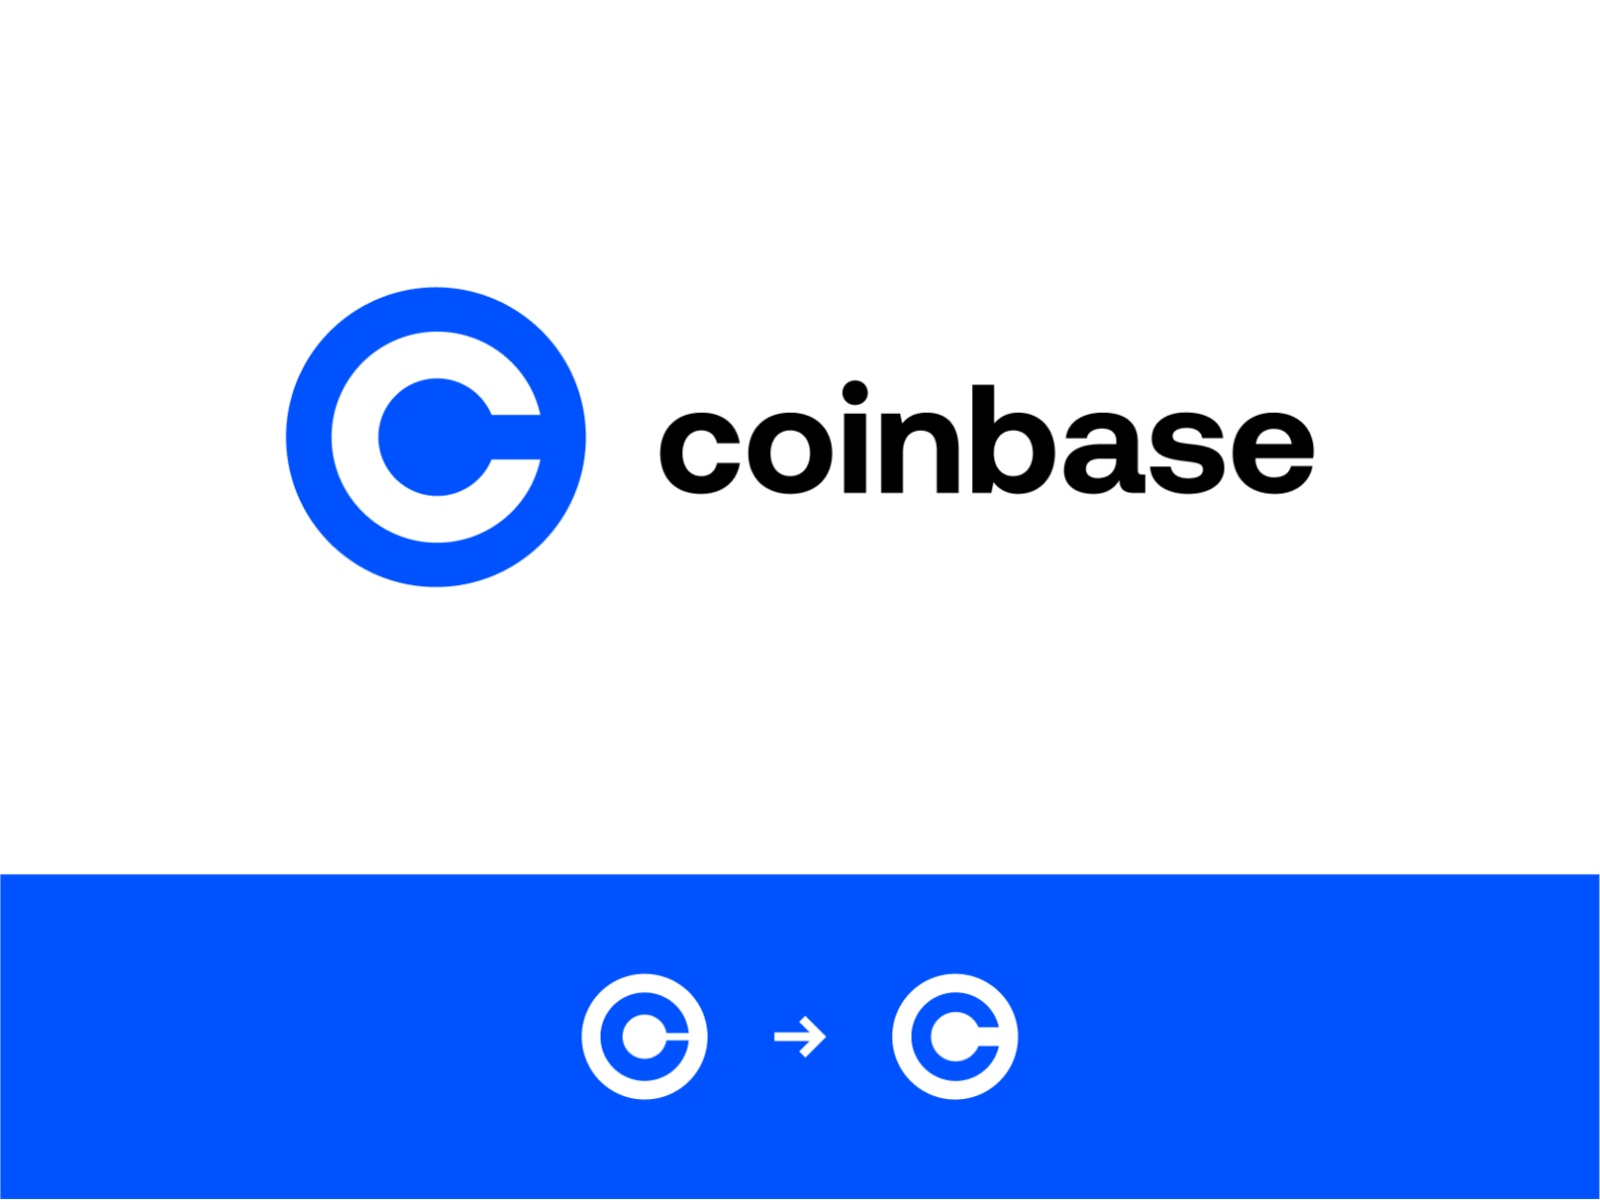 coinbase vision